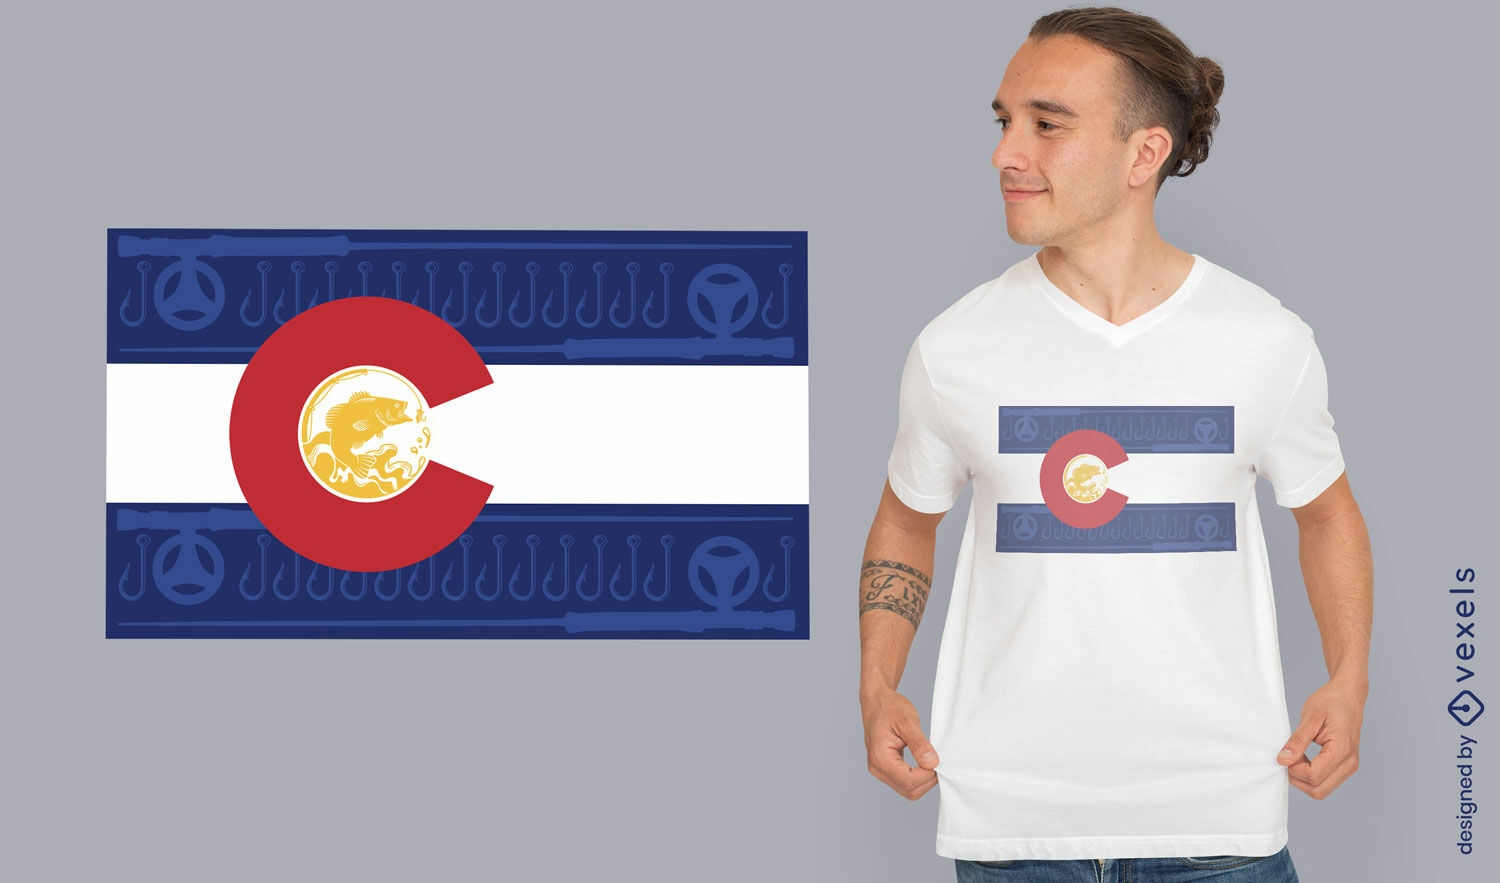 Diseño de camiseta con la bandera de Colorado.